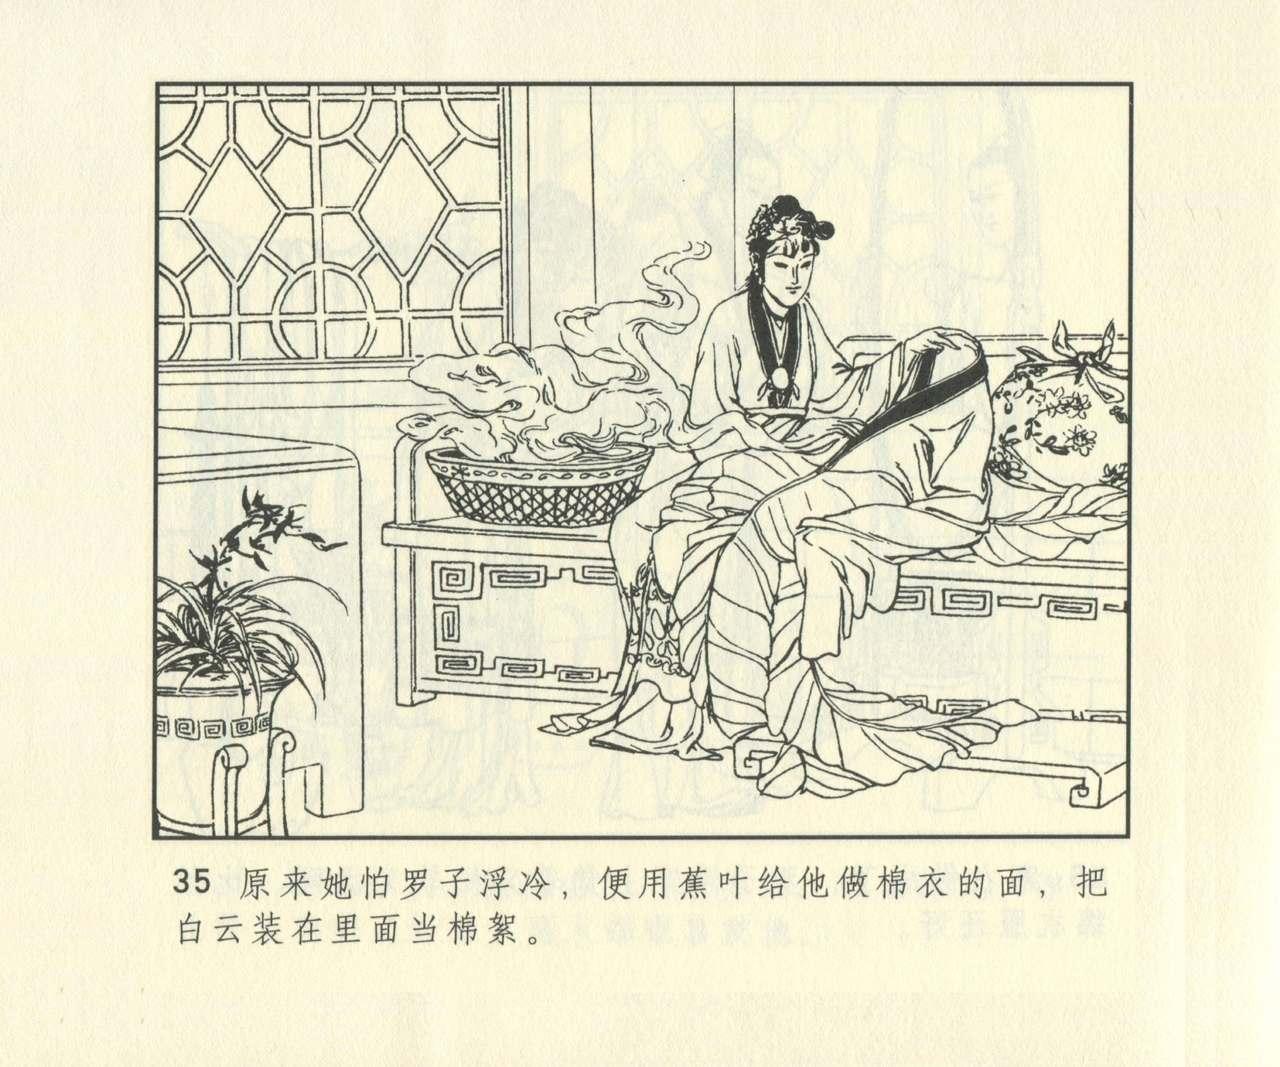 聊斋志异 张玮等绘 天津人民美术出版社 卷二十一 ~ 三十 651